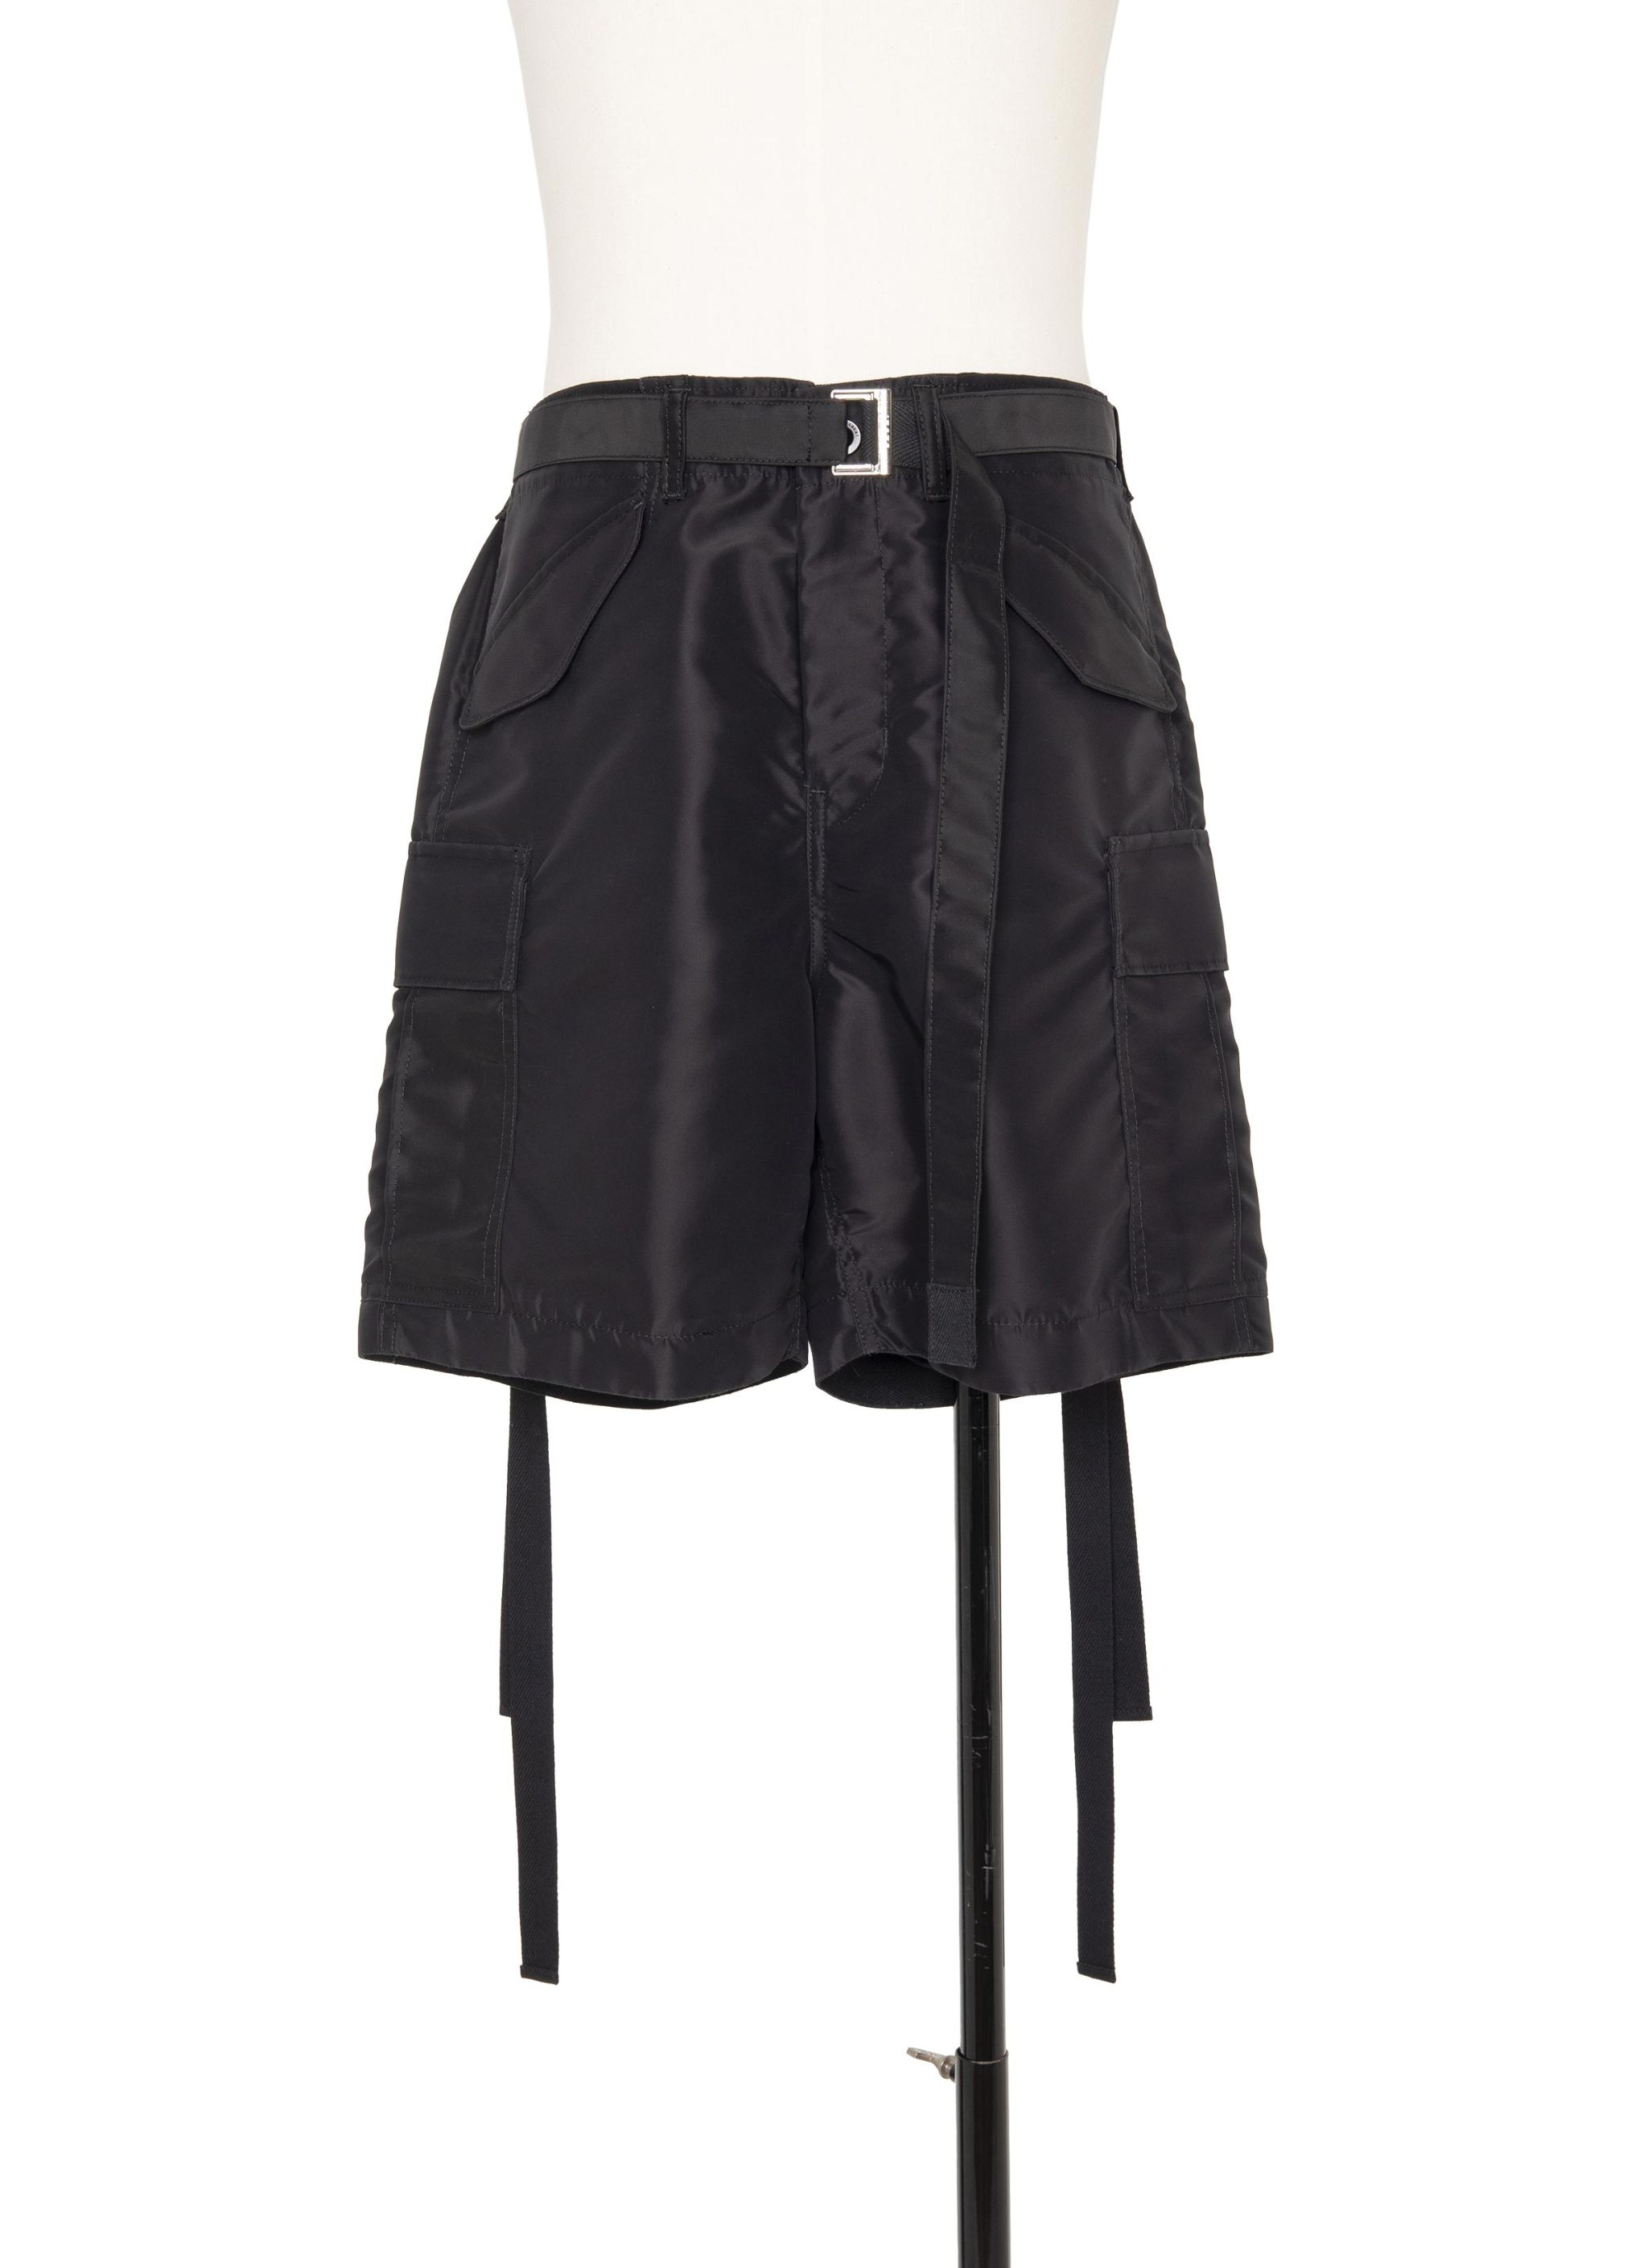 Nylon Twill Shorts - 1